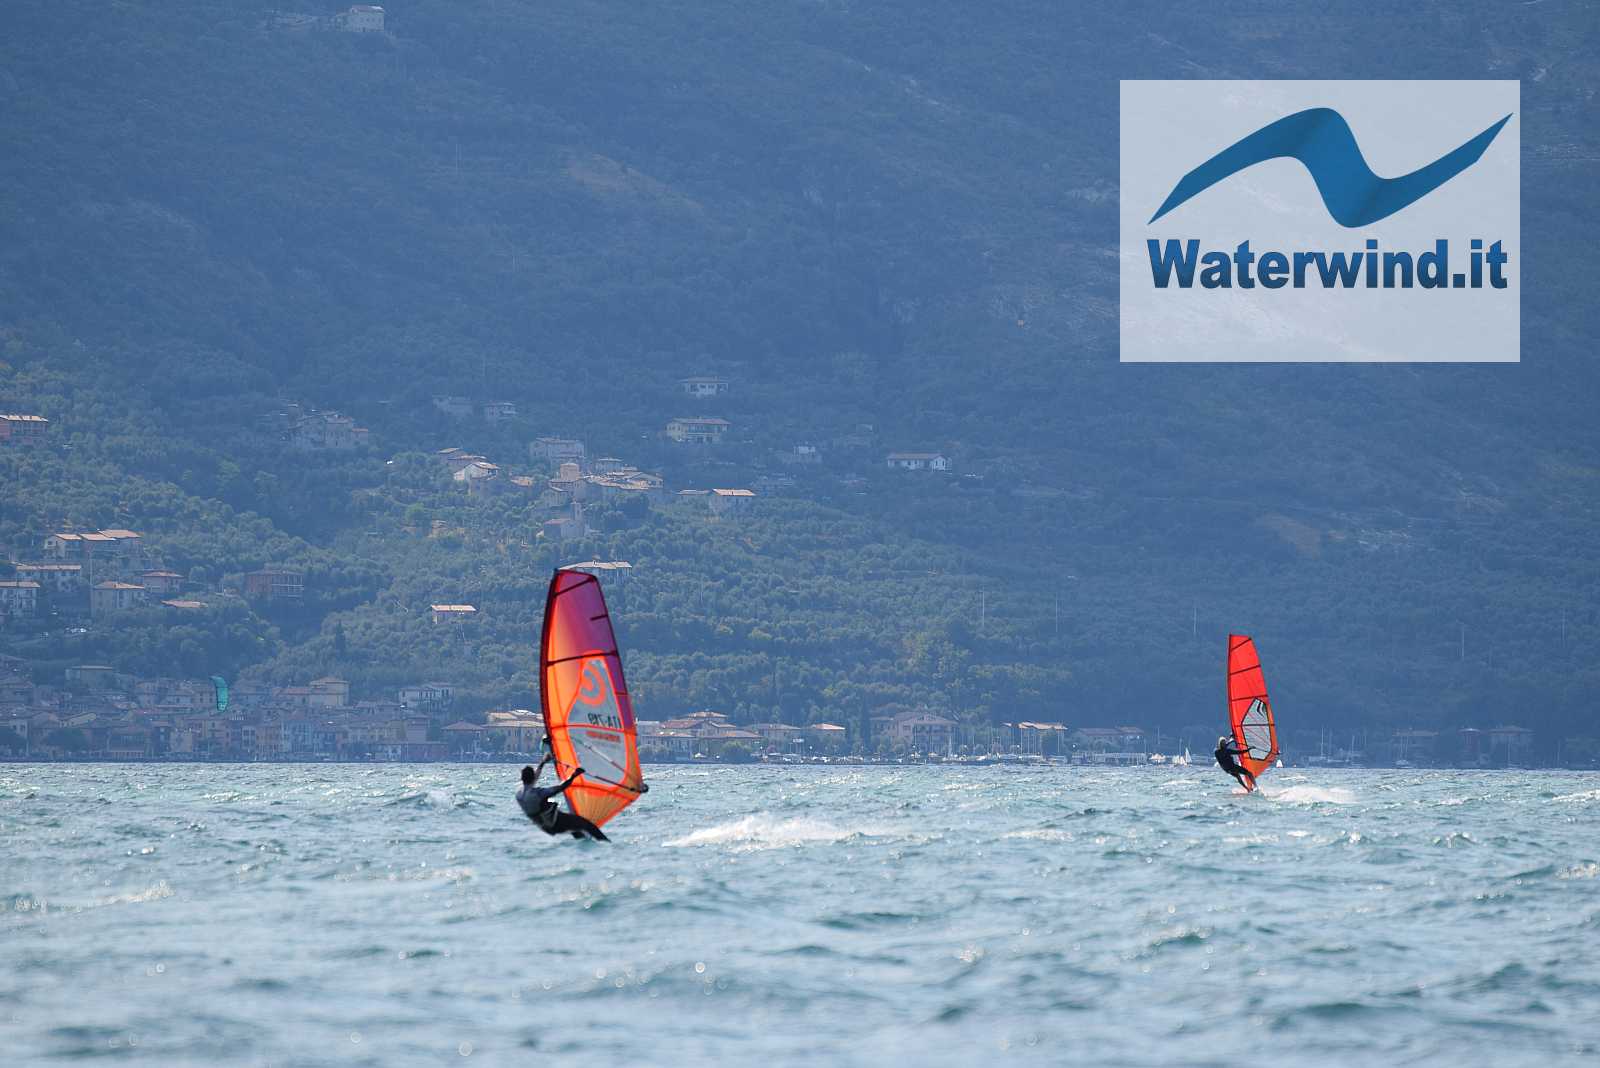 Prà de la Fam (Lake Garda), 22nd August 2018